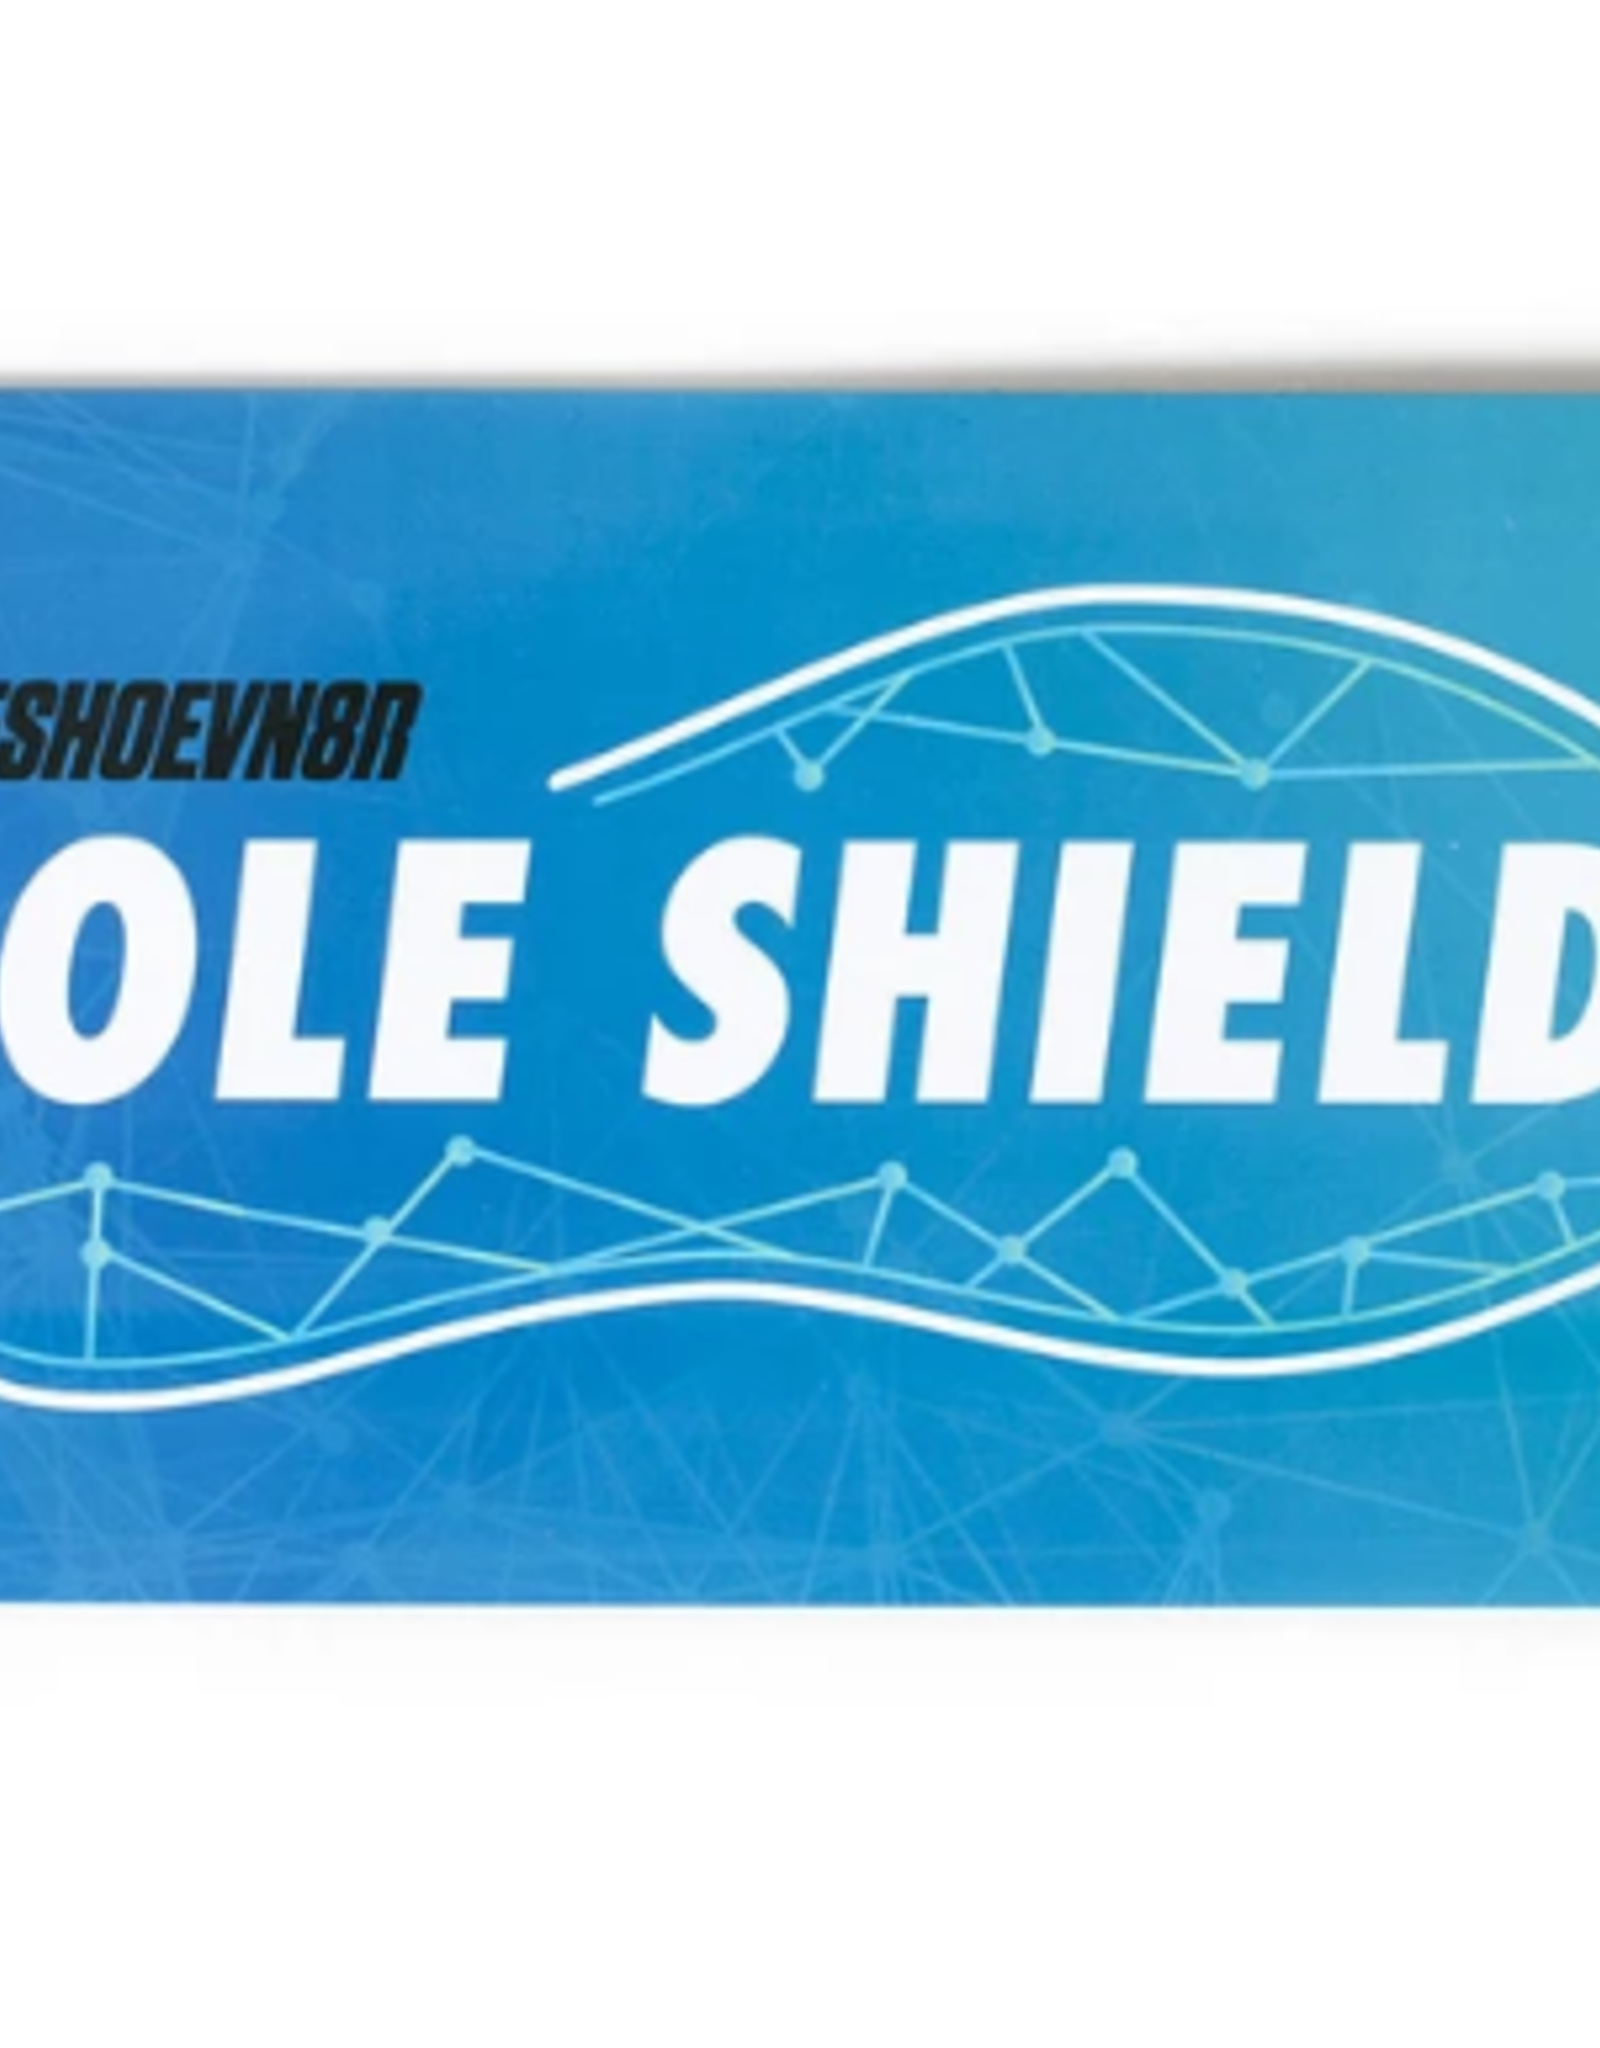 sole shields